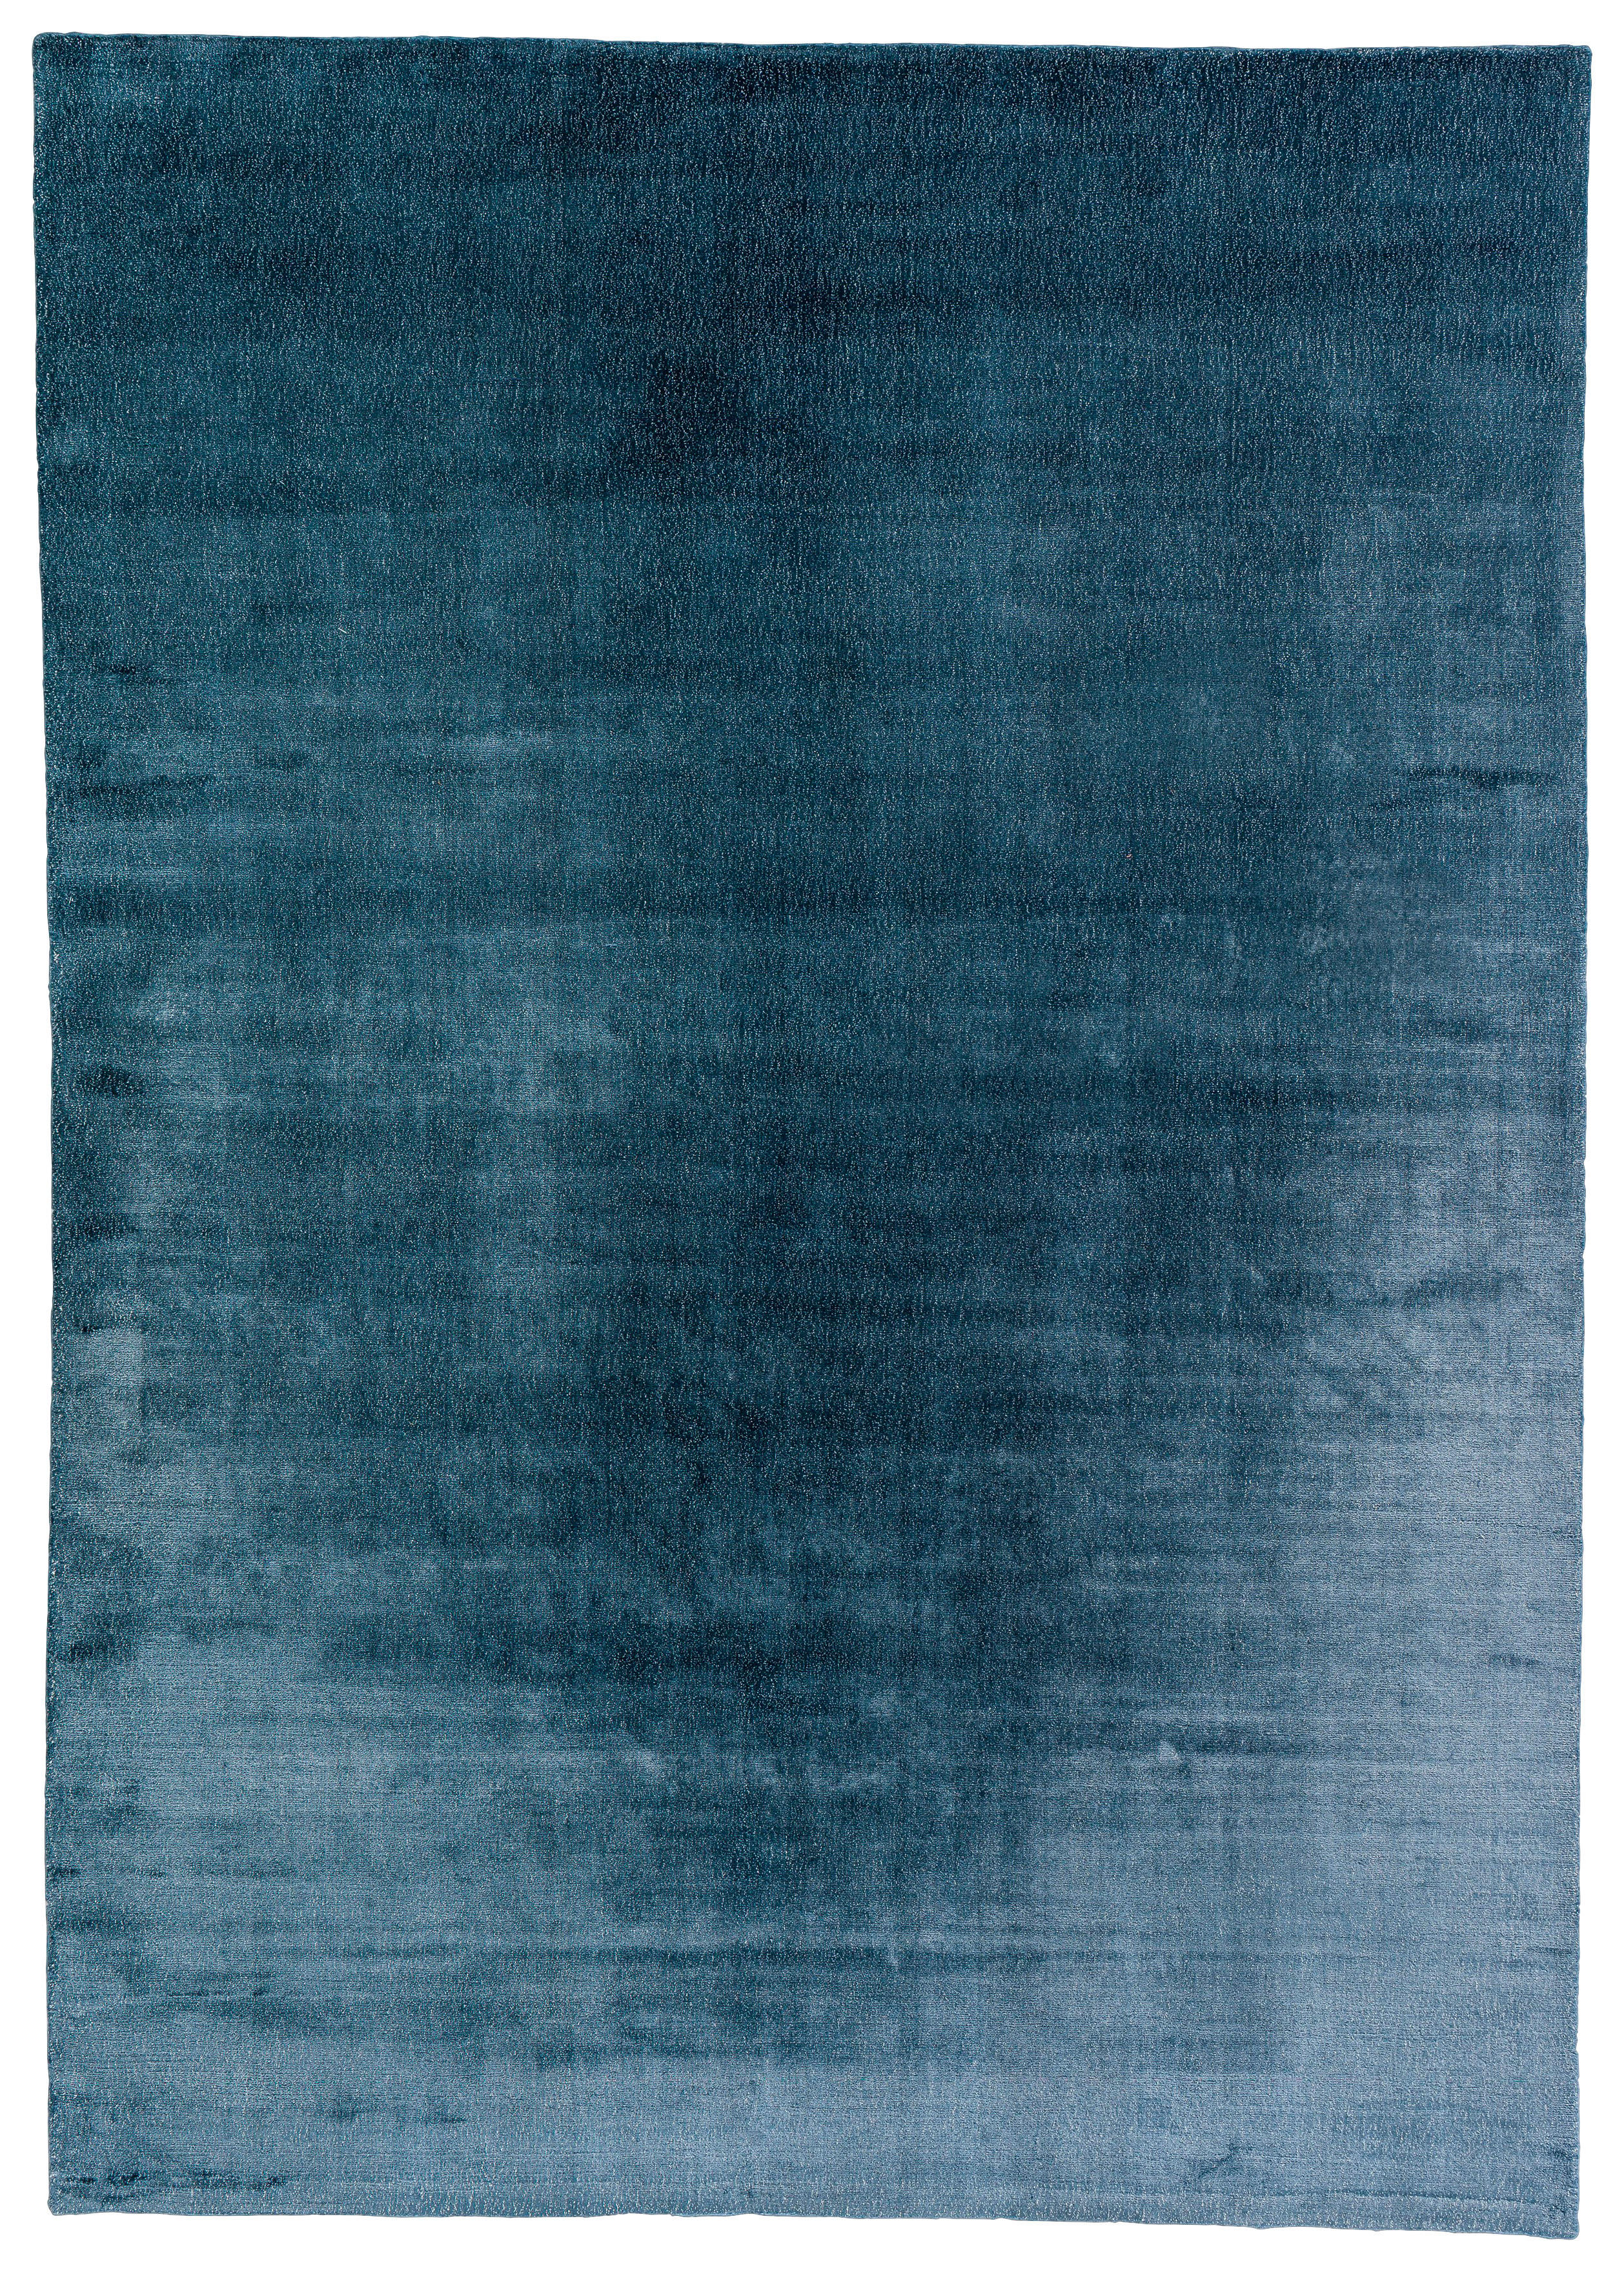 HANDWEBTEPPICH  140/200 cm  Blau   - Blau, Basics, Textil (140/200cm) - Schöner Wohnen